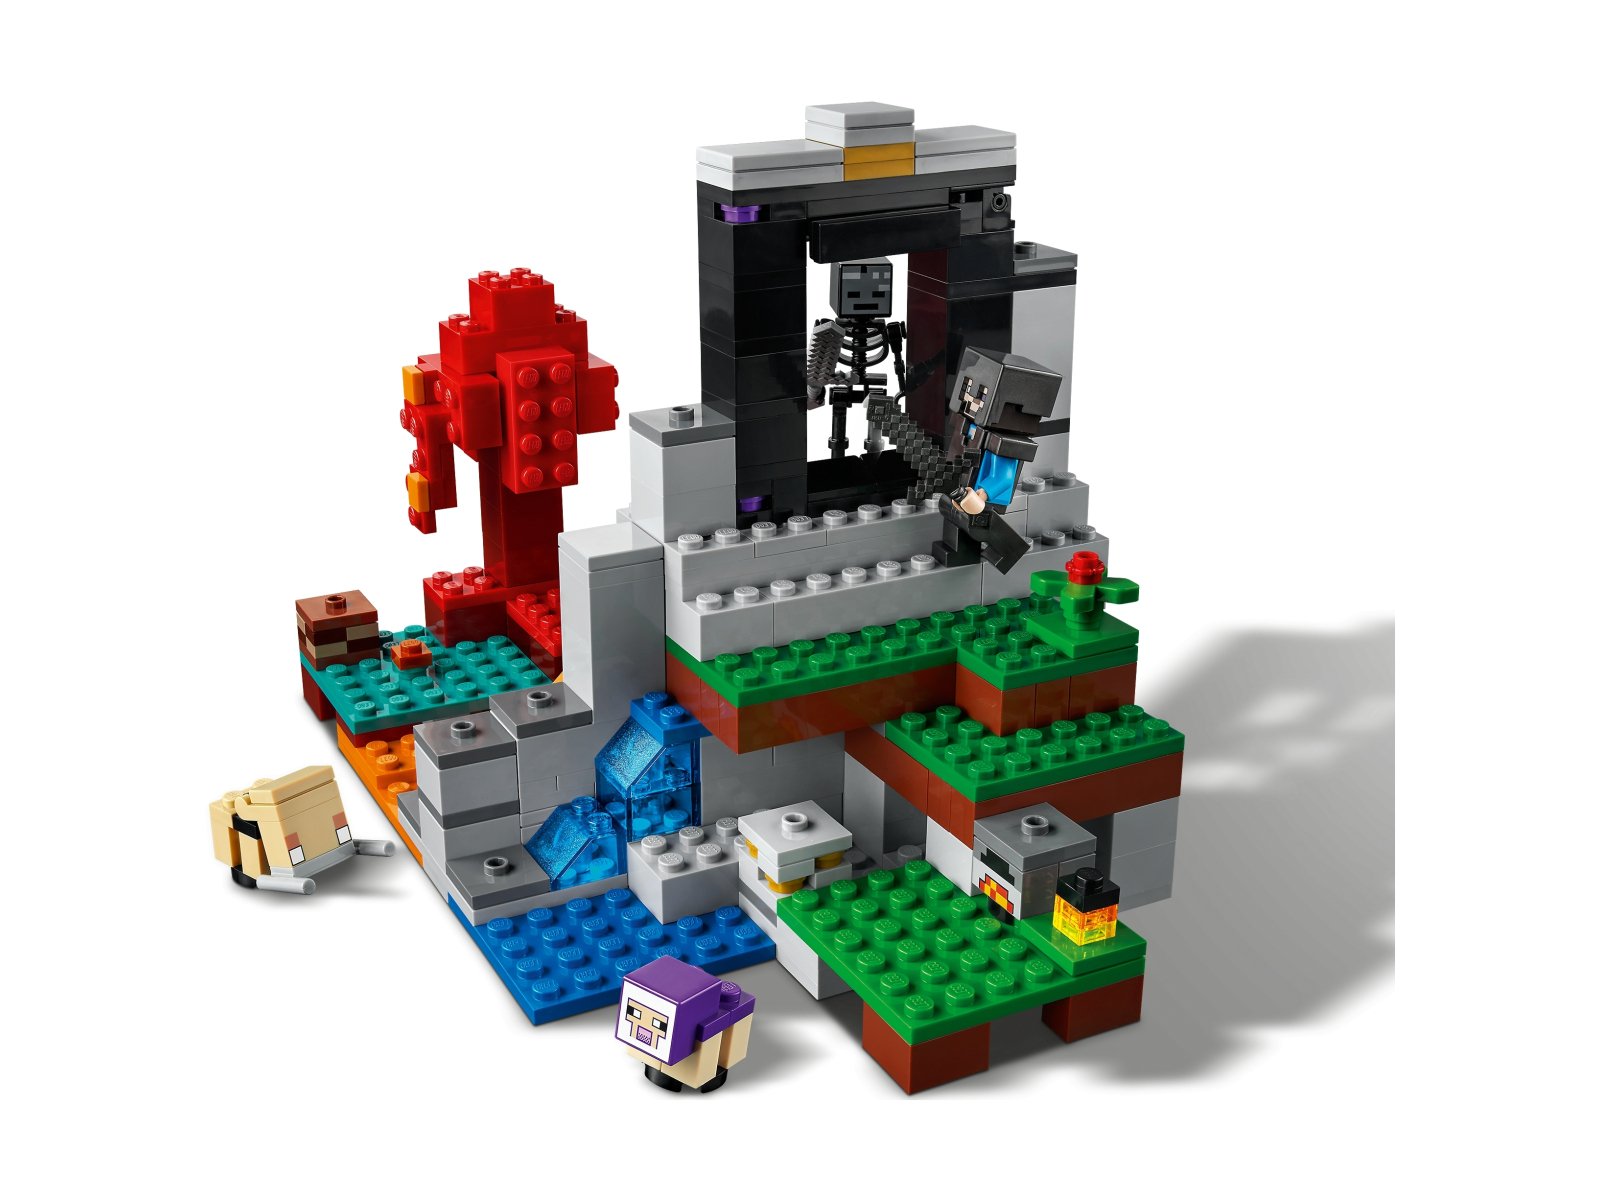 LEGO Minecraft Zniszczony portal 21172